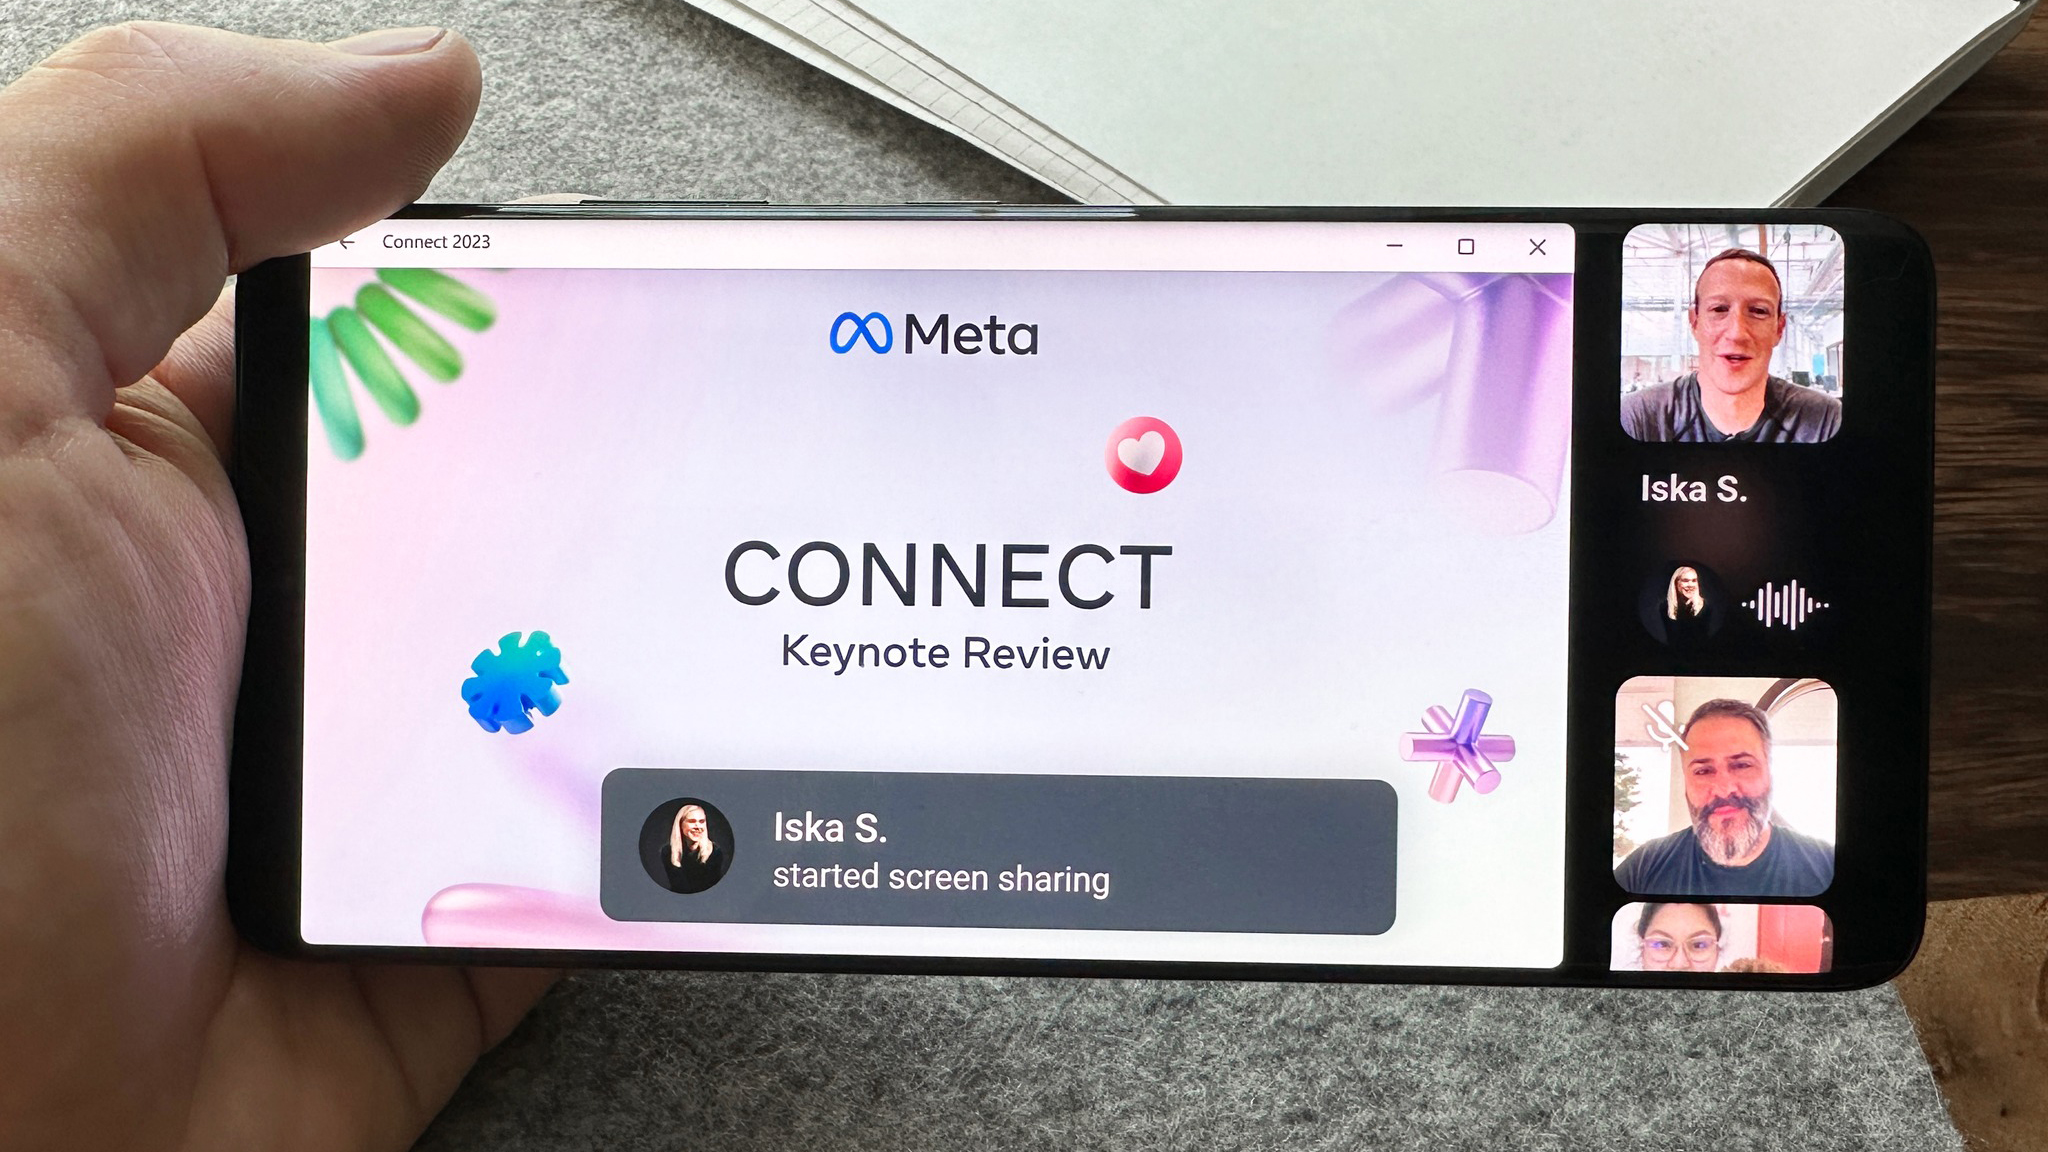 Рука держит телефон, показывающий презентацию Meta во время видеозвонка в WhatsApp с Марком Цукербергом